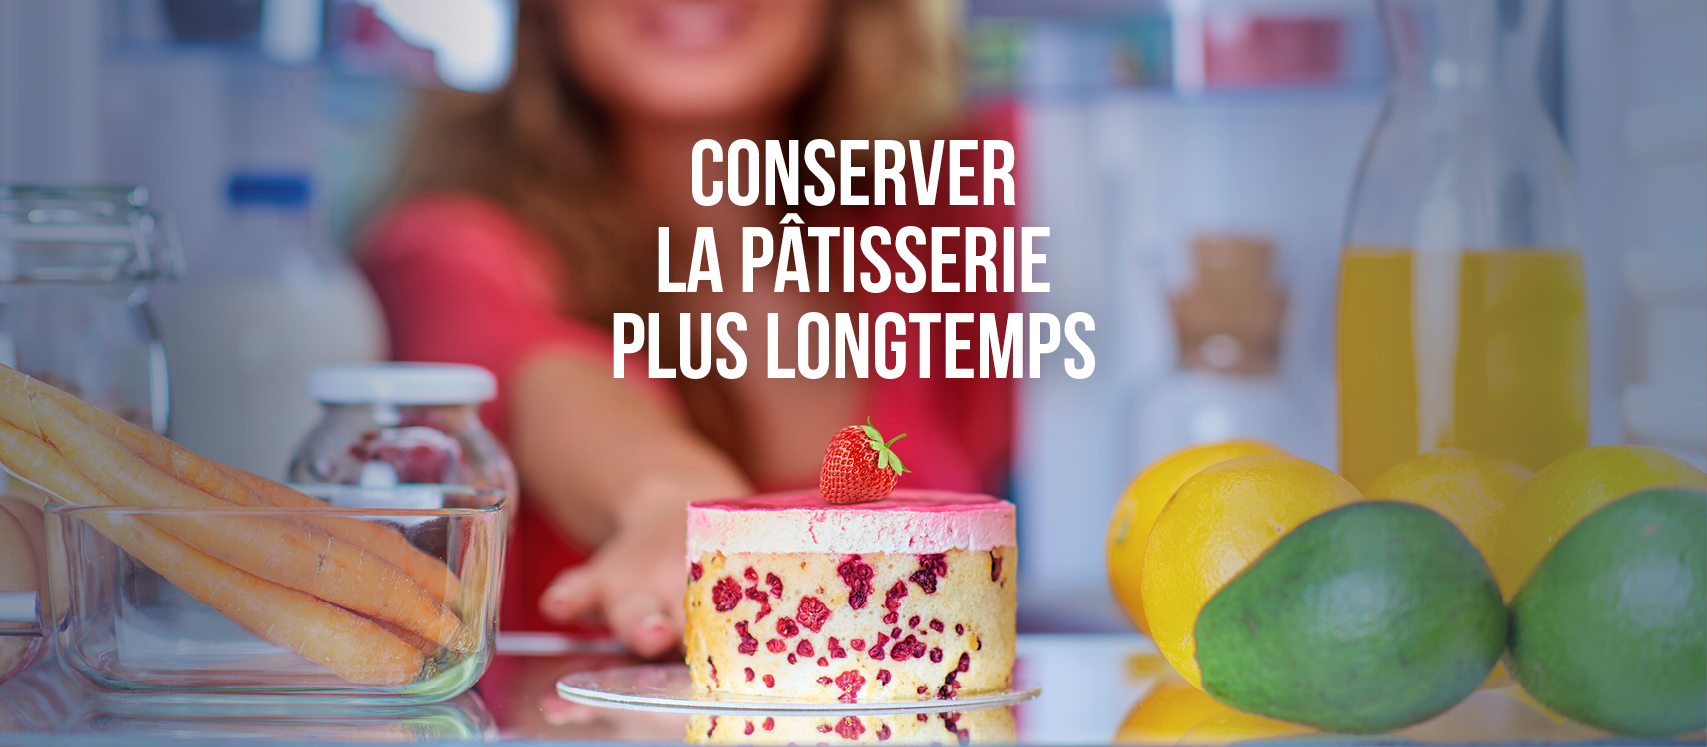 4 Bons Plans Pour Conserver La Patisserie Plus Longtemps Le Boulanger Artisan